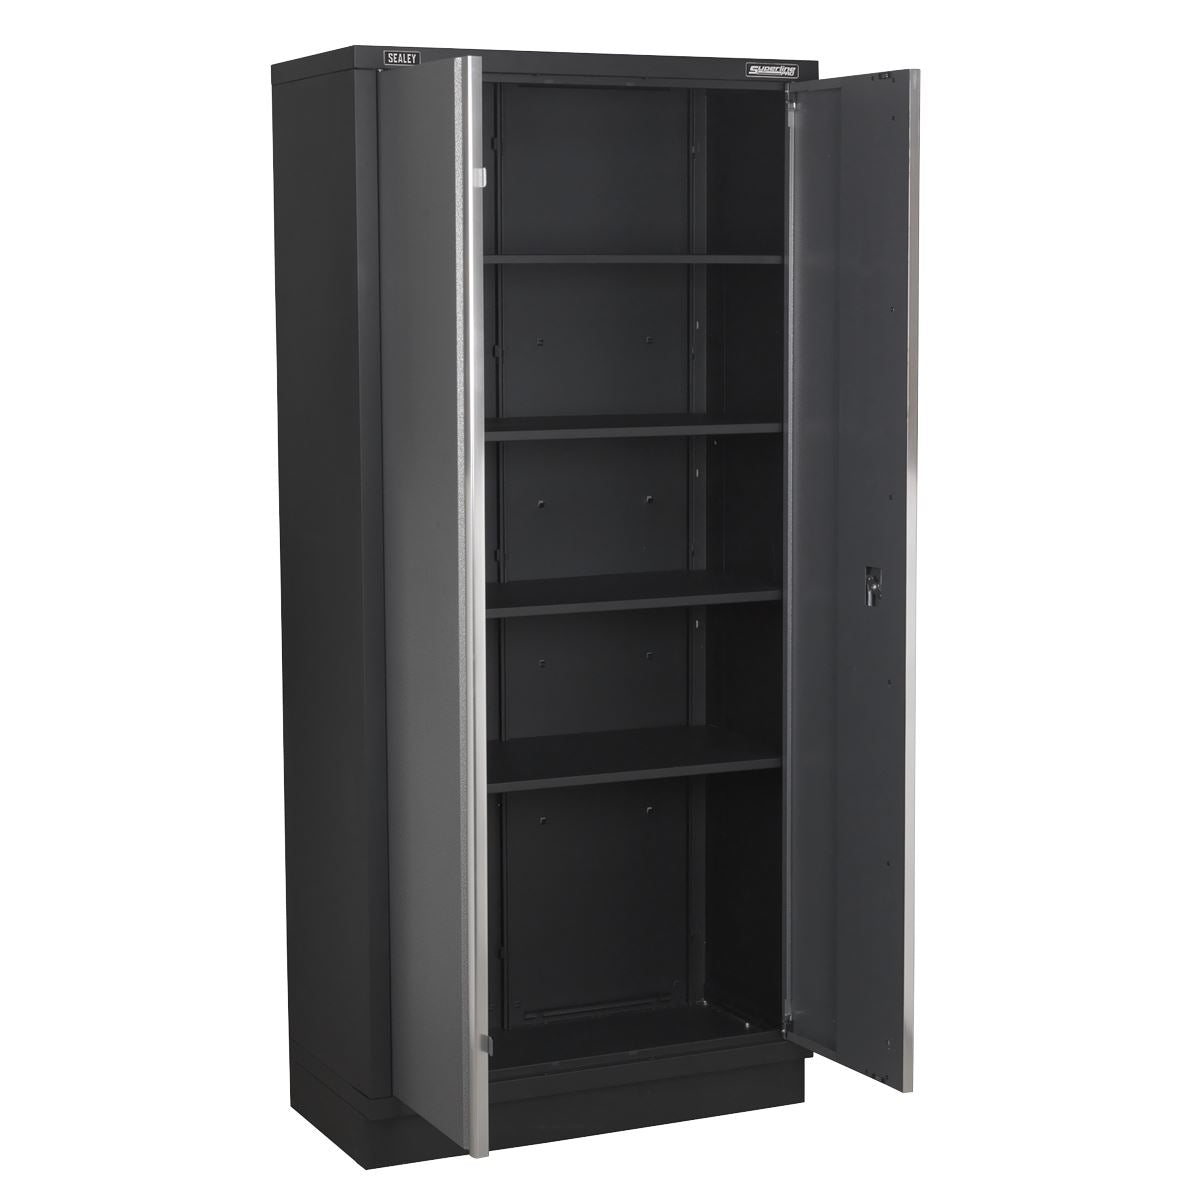 Sealey Modular Floor Cabinet 2 Door Full Height 915mm APMS56